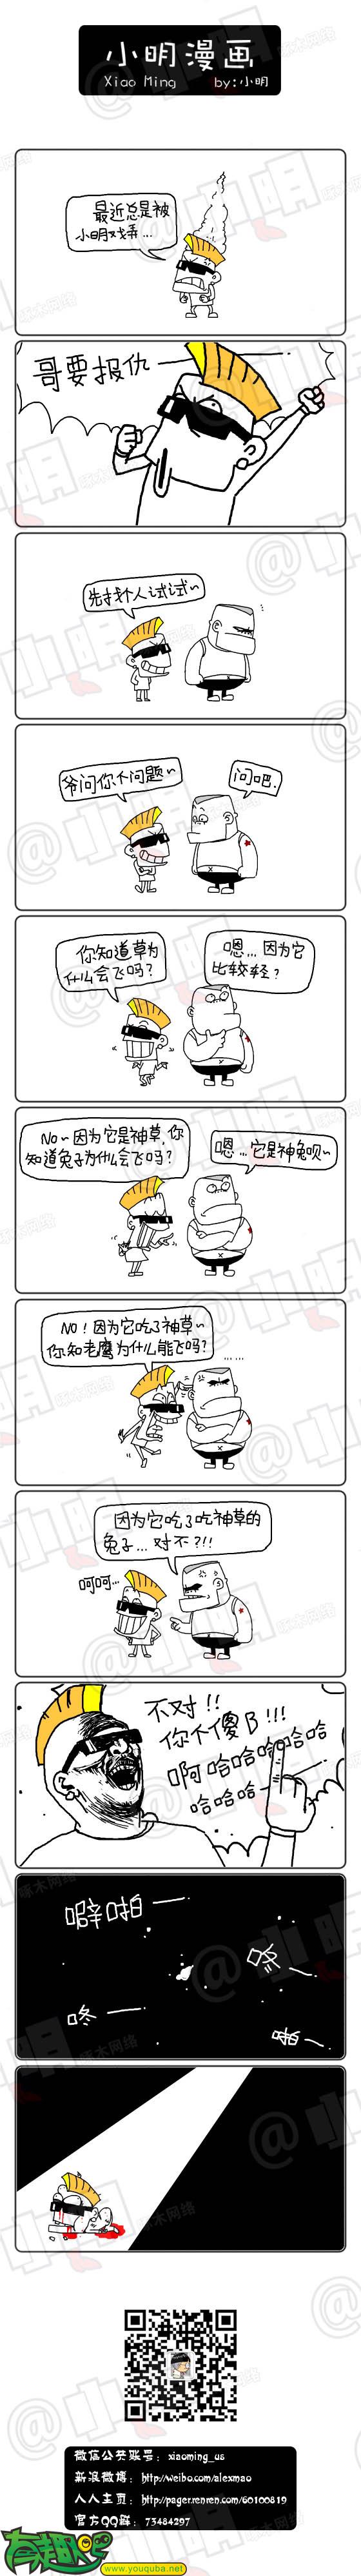 小明系列漫画:反击进行时